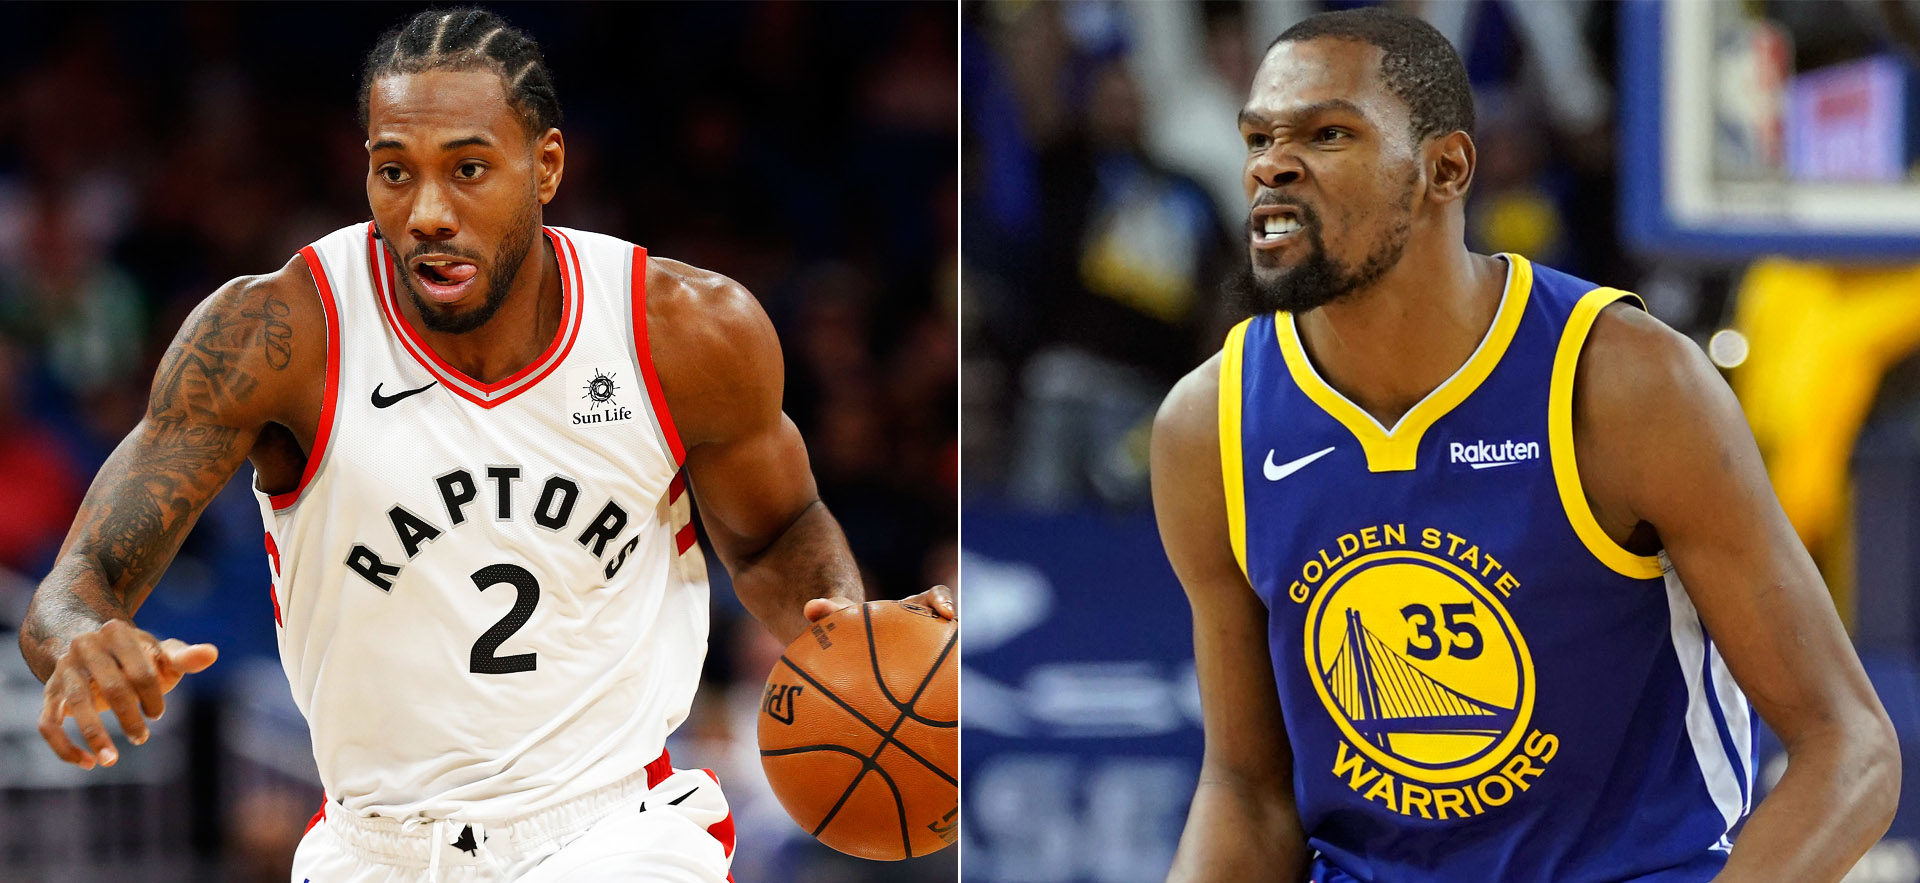 Raptors vs Warriors s'annonce commele plus gros choc de cette nuit. Qui de Kawhi Leonard ou de Kevin Durant ressortira grand vainqueur ?